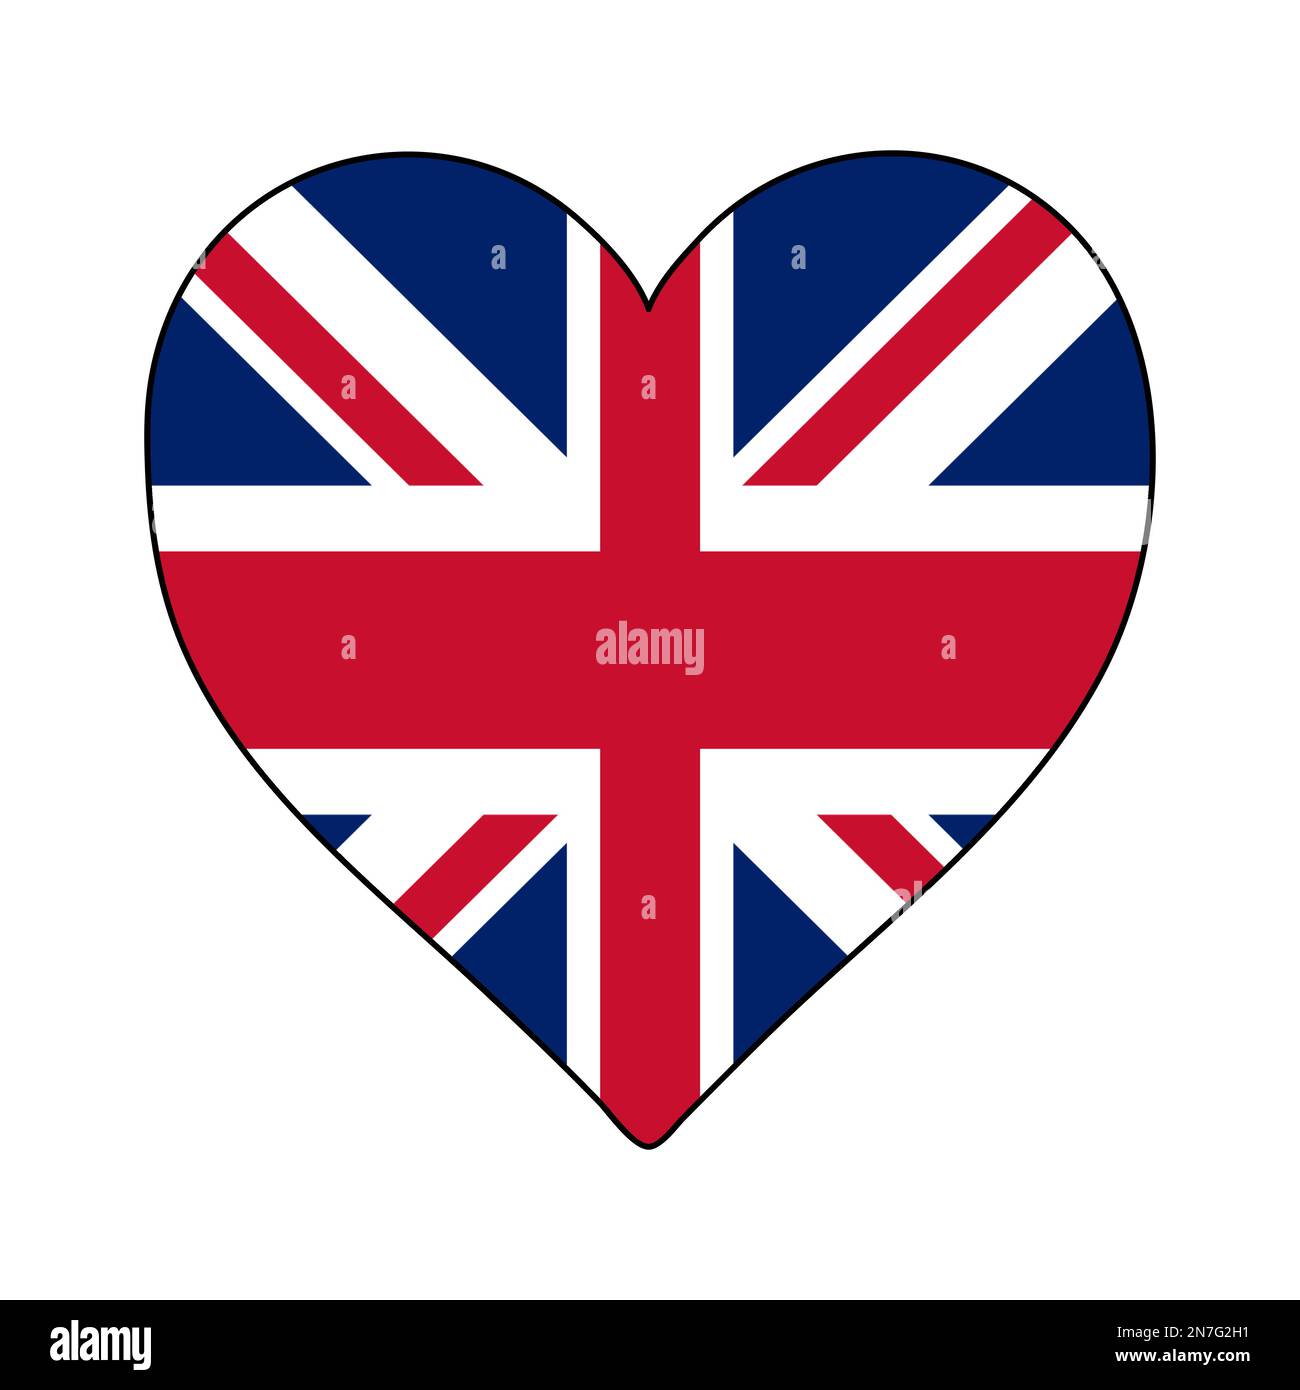 Regno Unito Heart Shape Flag. Amore Regno Unito. Visita Regno Unito. Nord Europa. Europa. Unione europea. Disegno grafico dell'illustrazione vettoriale Illustrazione Vettoriale